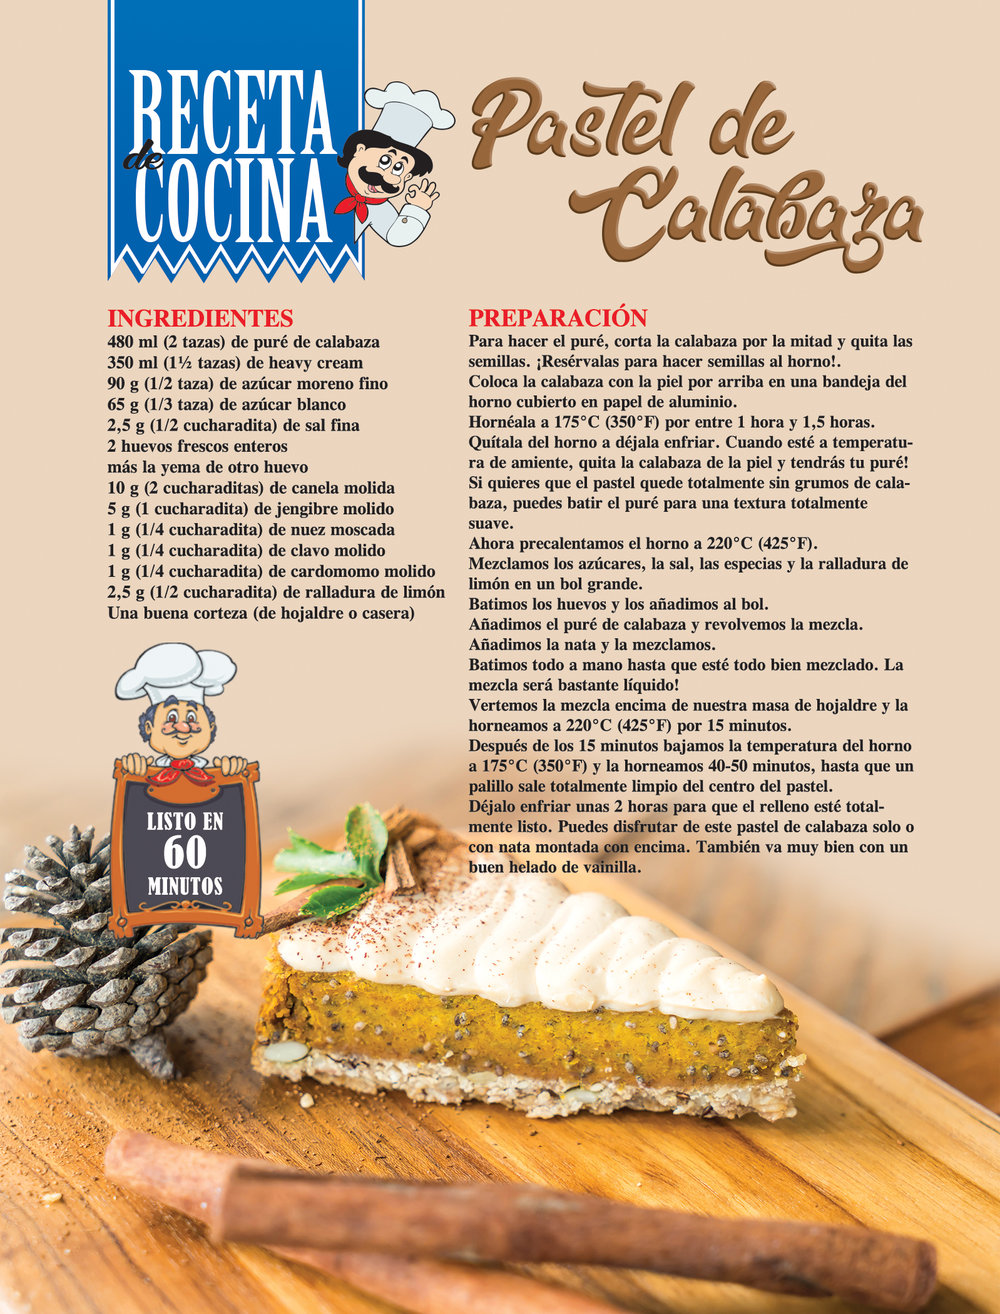 Pastel De Calabaza (Pumpkin Pie)